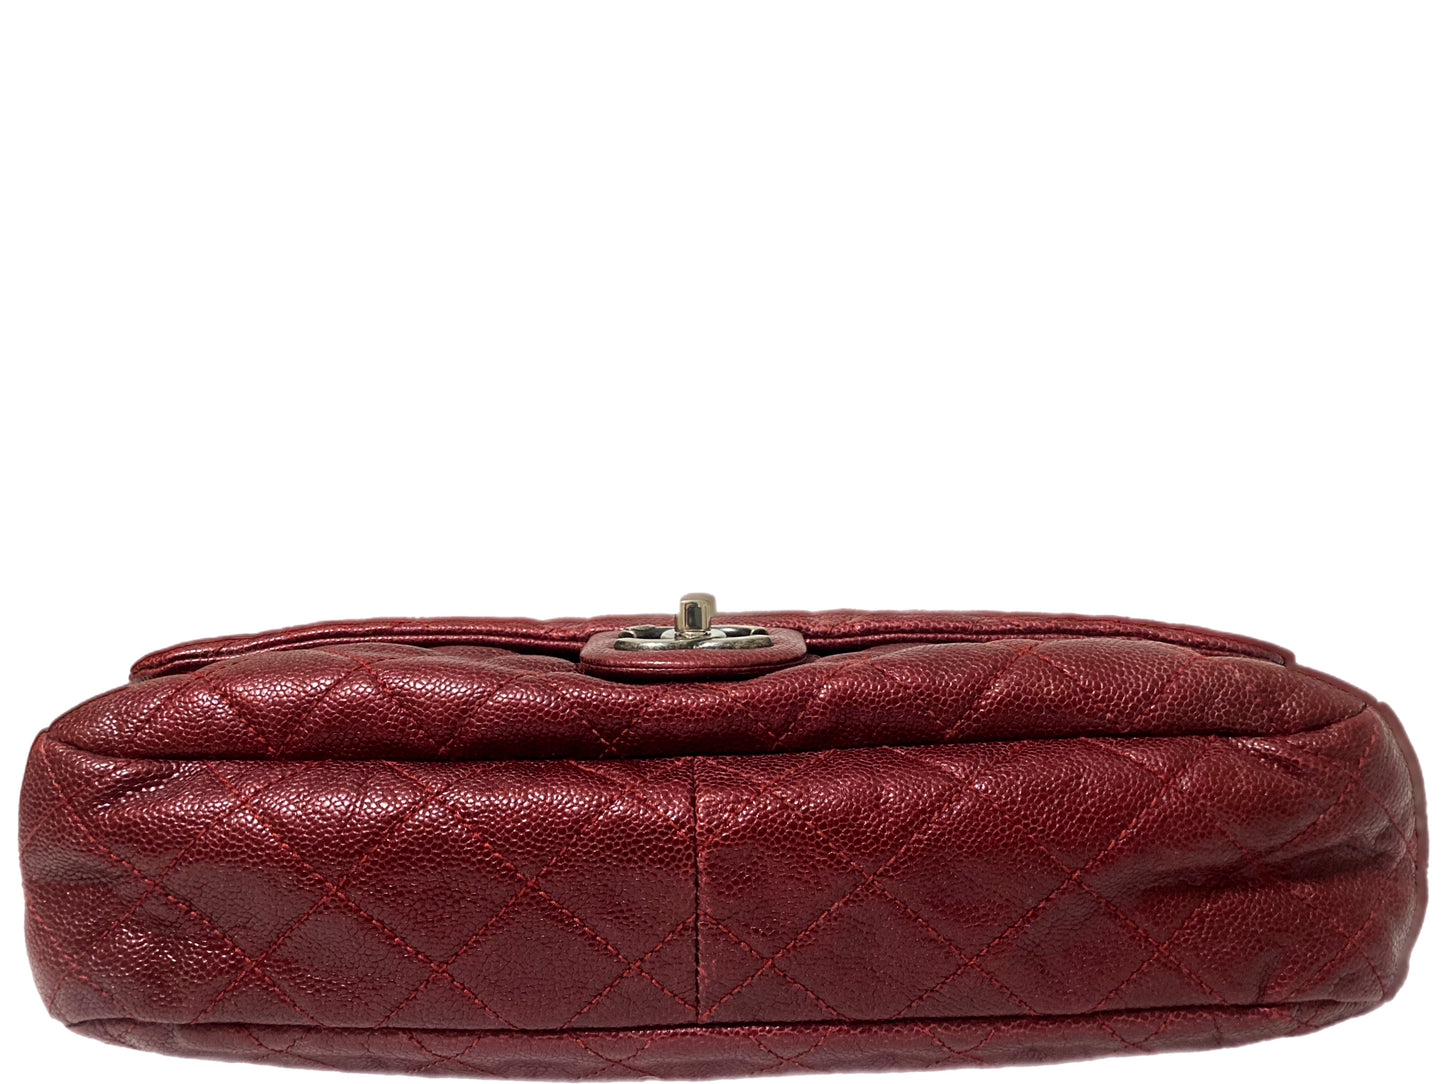 CHANEL Timeless Caviar Leather Shoulder Bag Burgundy